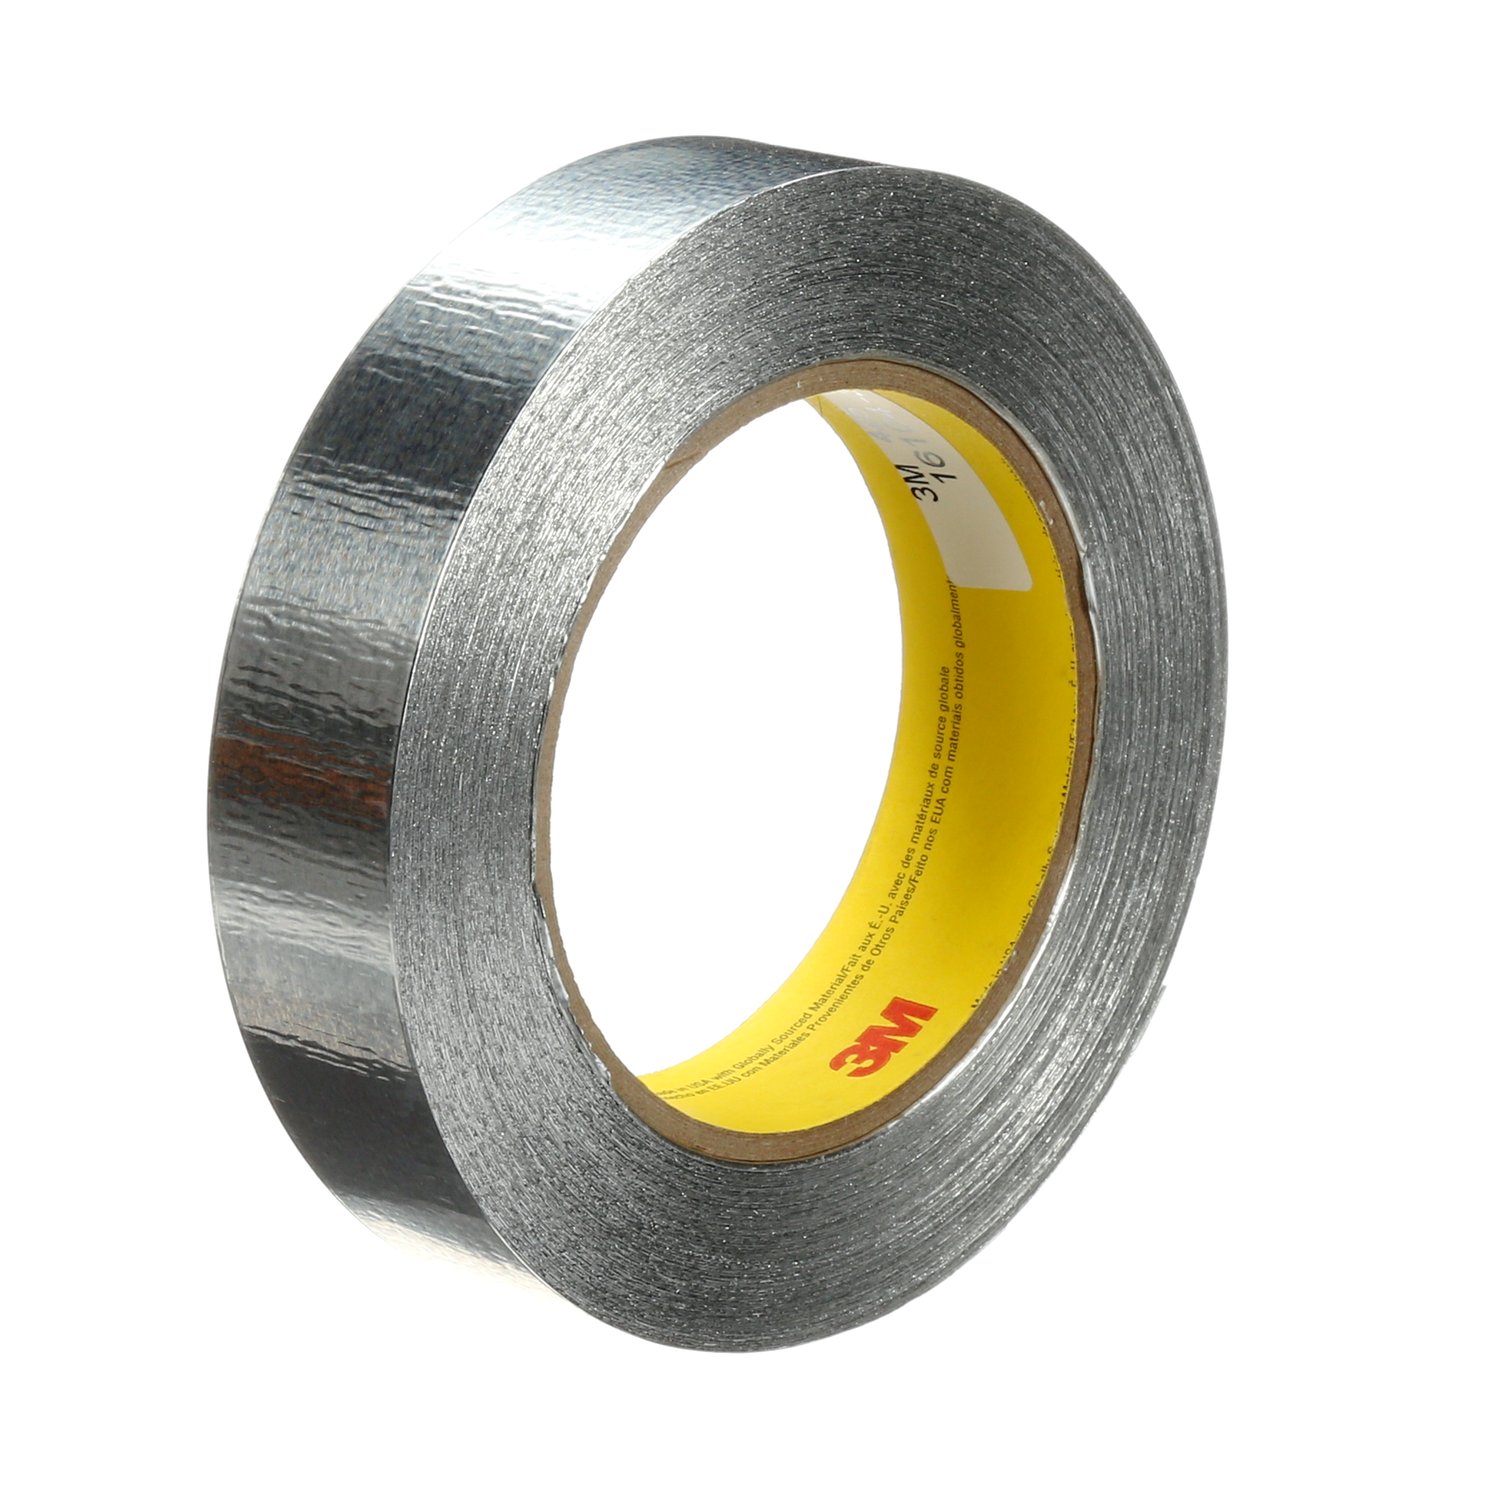 7100053741 - 3M Aluminum Foil Tape 425, Silver, 1 in x 60 yd, 4.6 mil, 36 rolls per
case